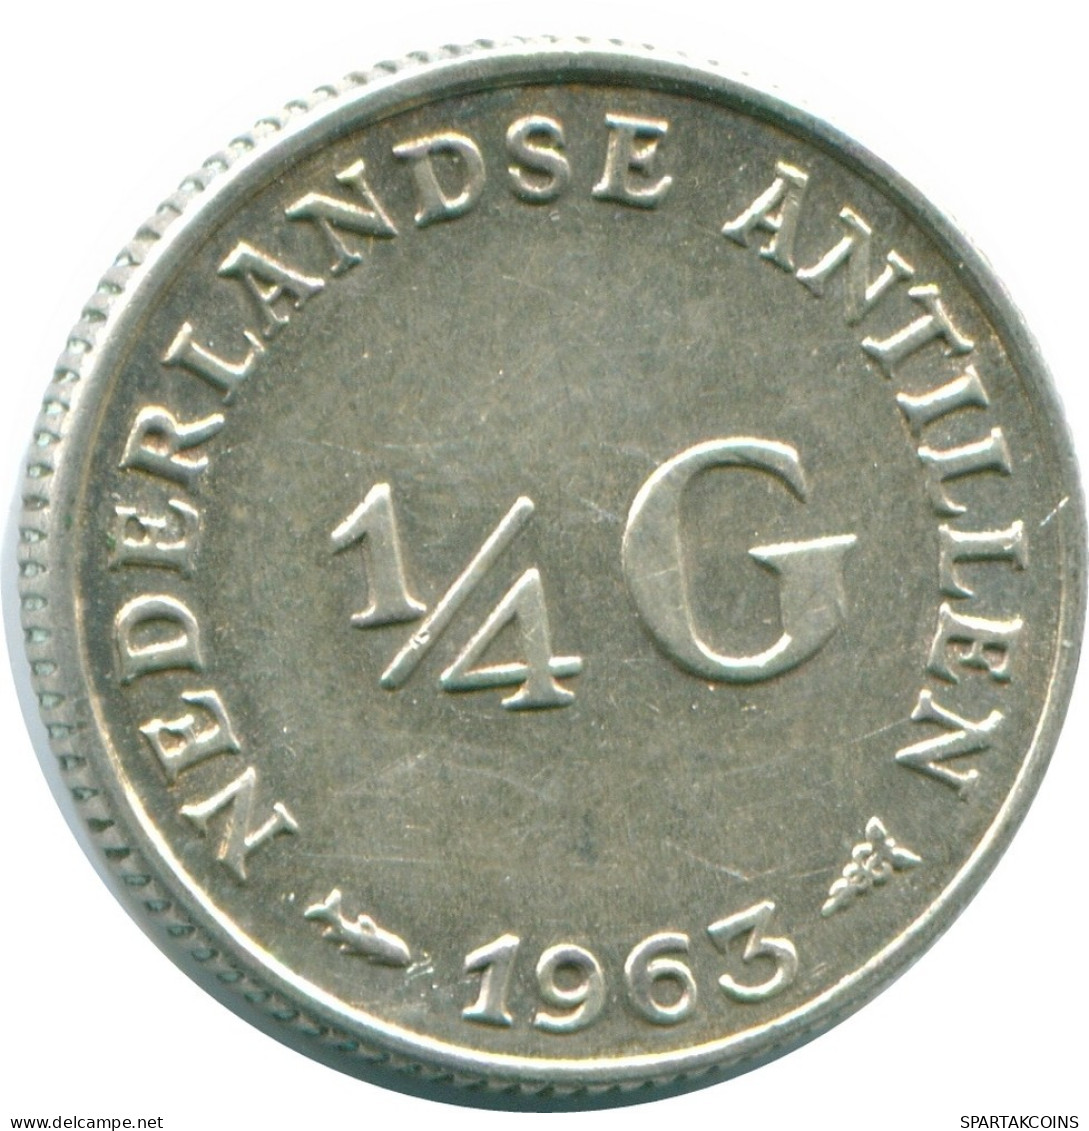 1/4 GULDEN 1963 NIEDERLÄNDISCHE ANTILLEN SILBER Koloniale Münze #NL11243.4.D.A - Niederländische Antillen